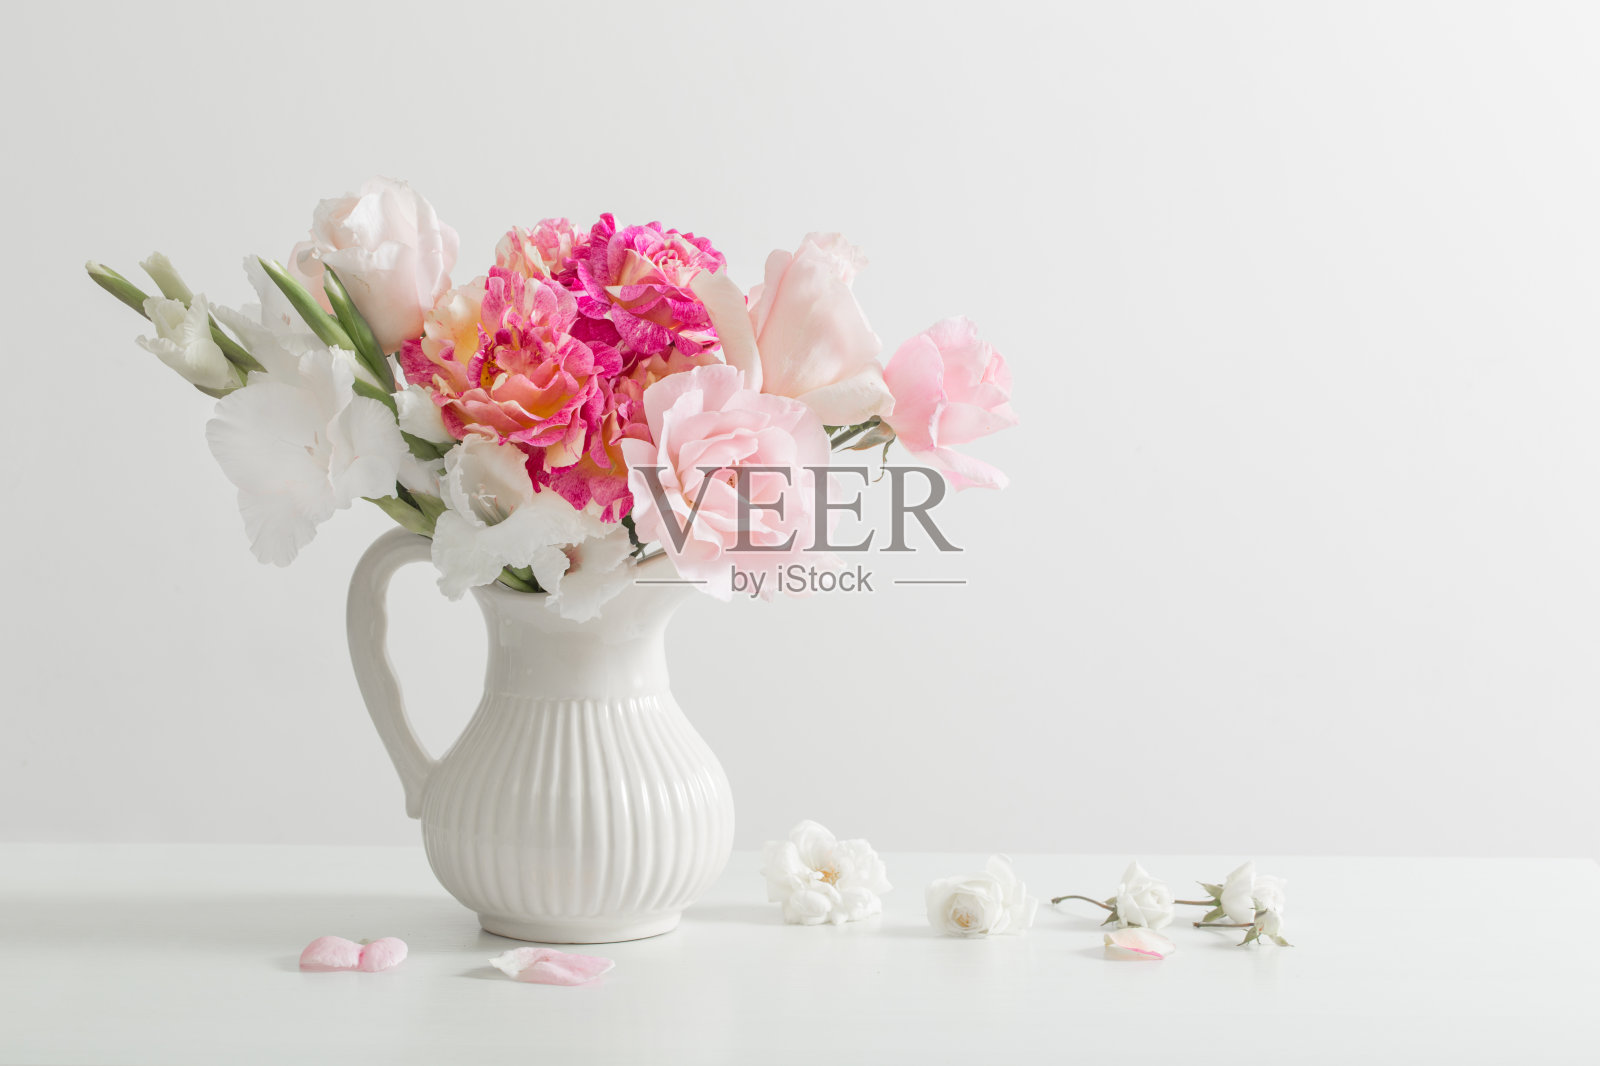 花瓶上白底粉红色和白色的花照片摄影图片